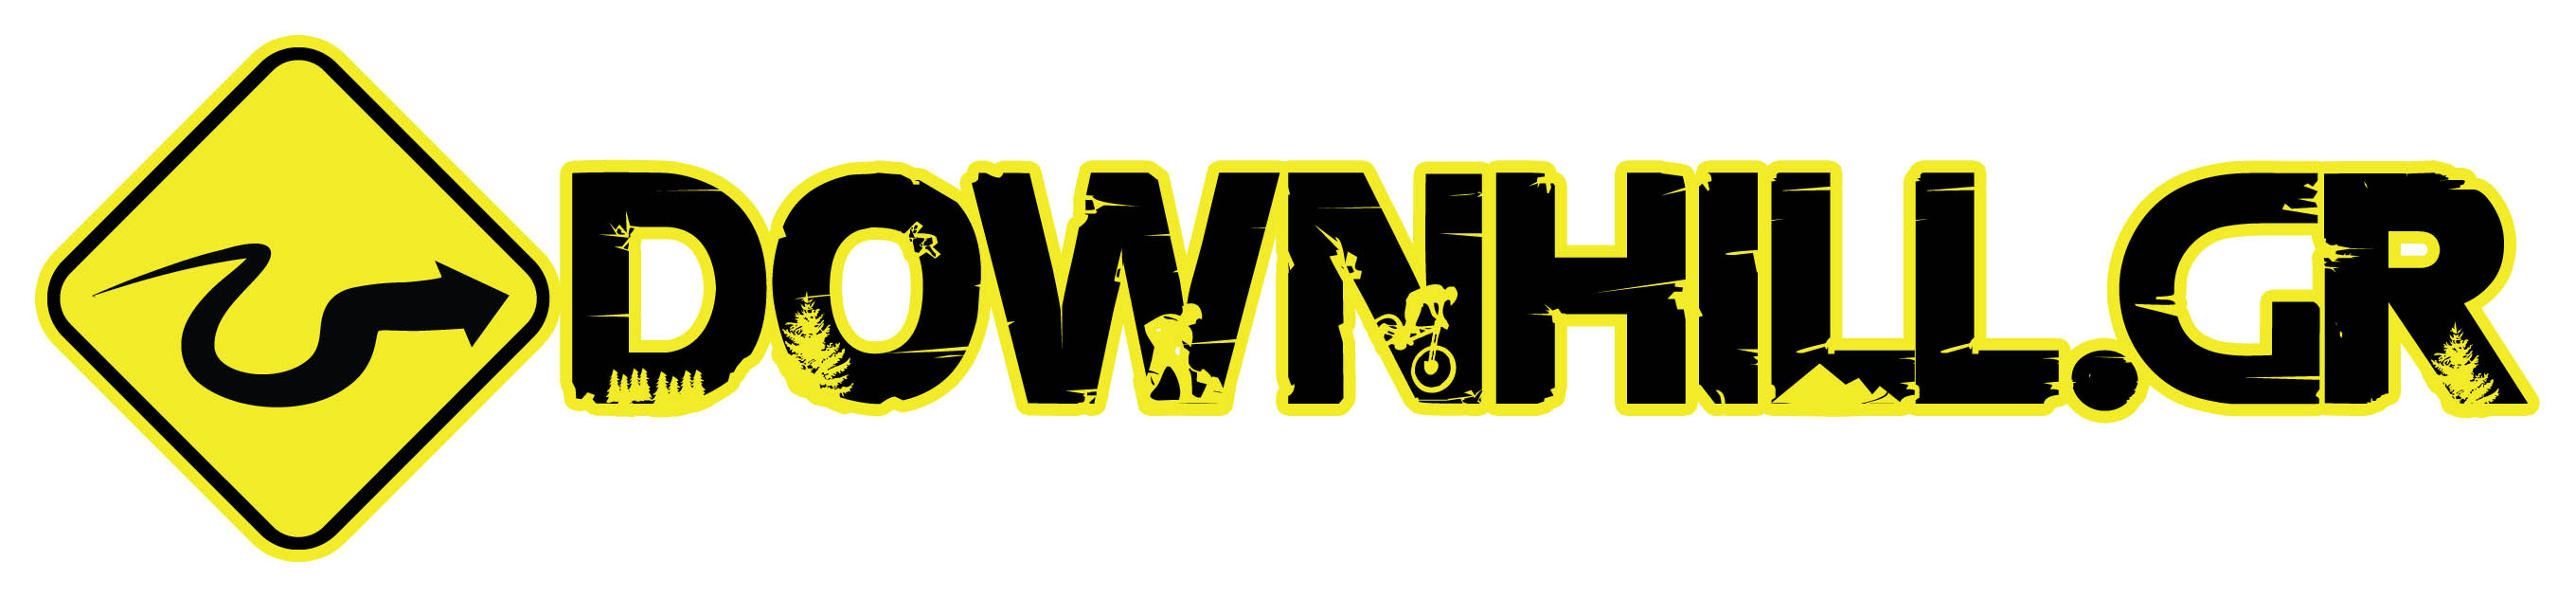 downhillgr logo 2015 big by